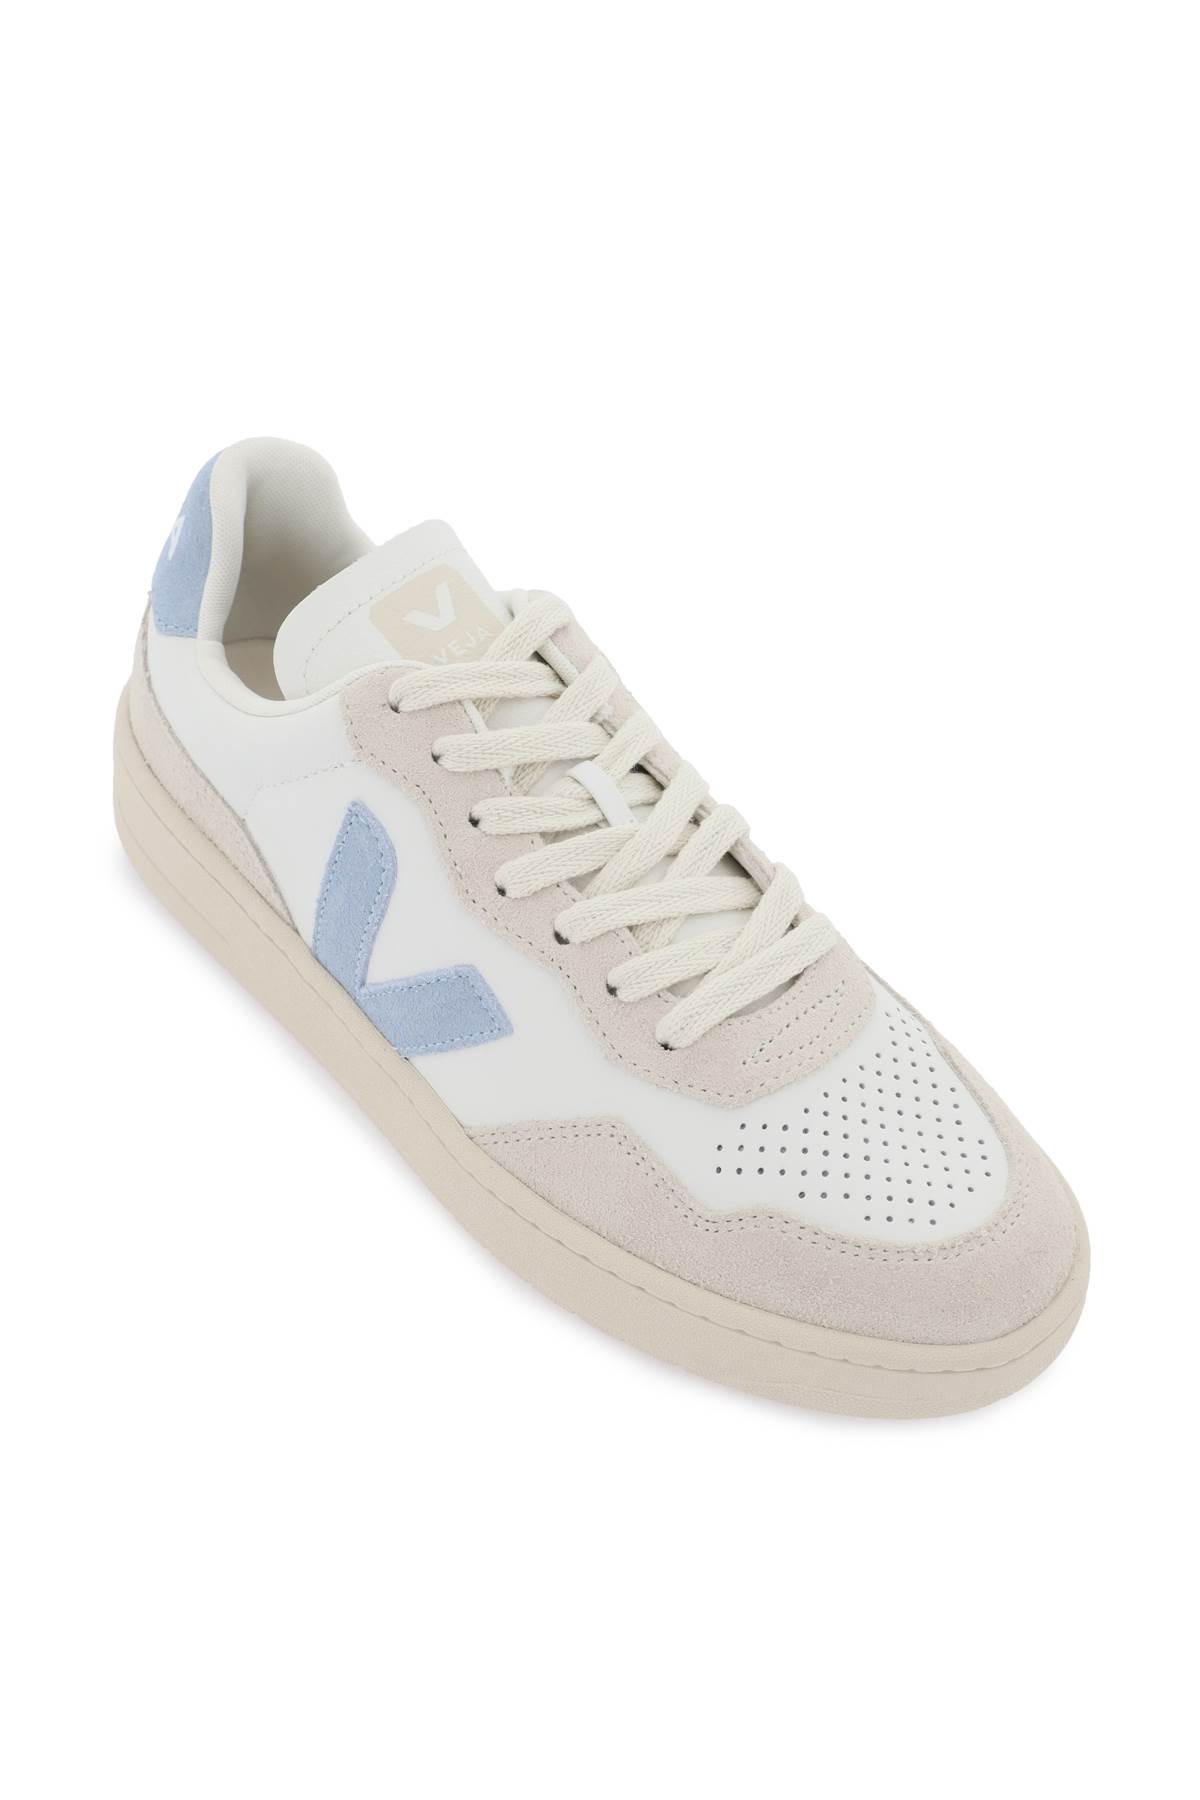 Shop Veja V-90 Sneakers In Extra White Steel (white)